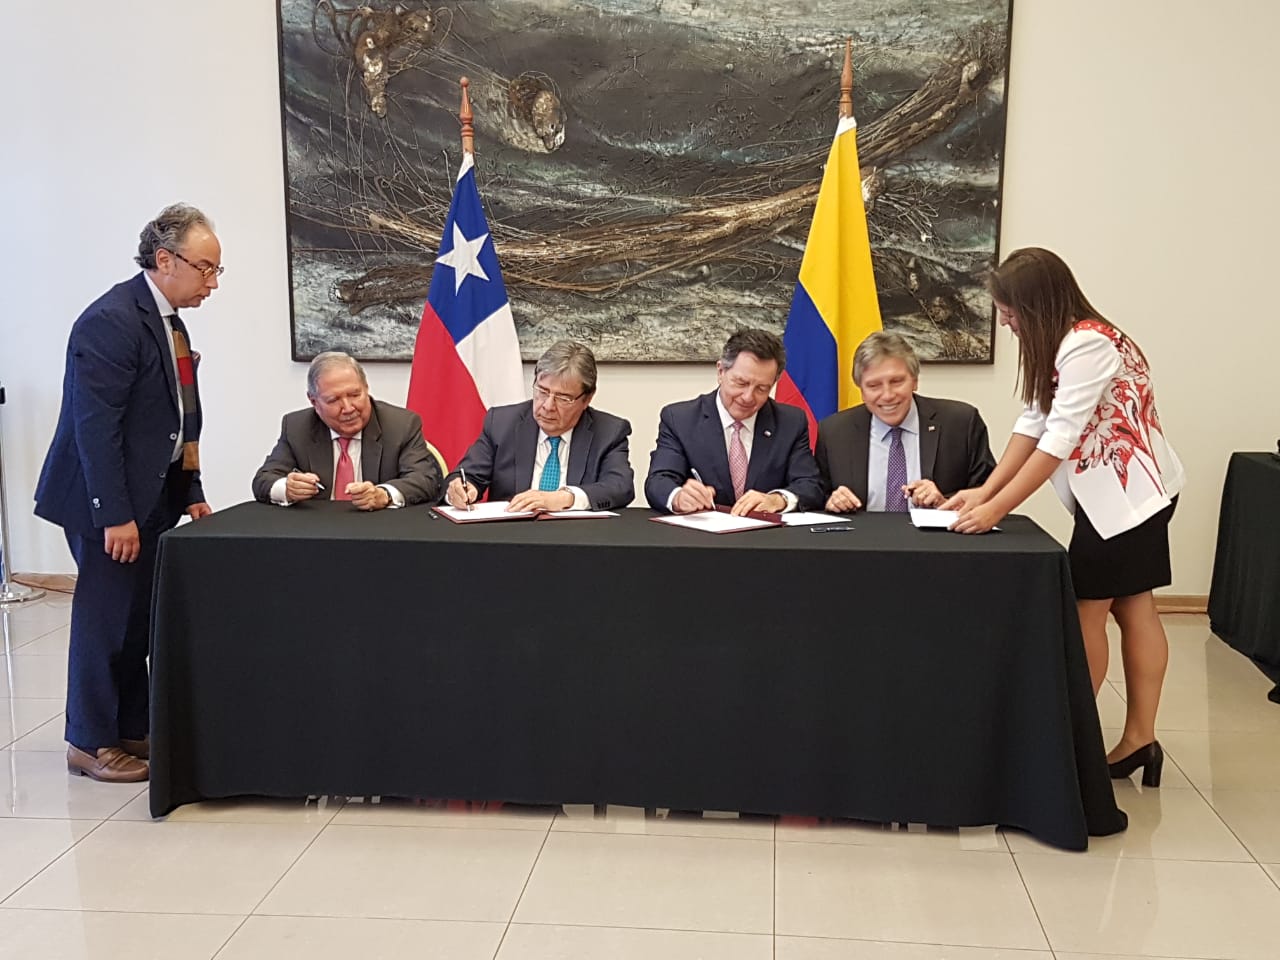 Paz y seguridad, ciberdefensa, desminado humanitario, asistencia humanitaria y atención de desastres fueron los temas tratados en el Mecanismo de Consultas Políticas 2+2 Chile-Colombia